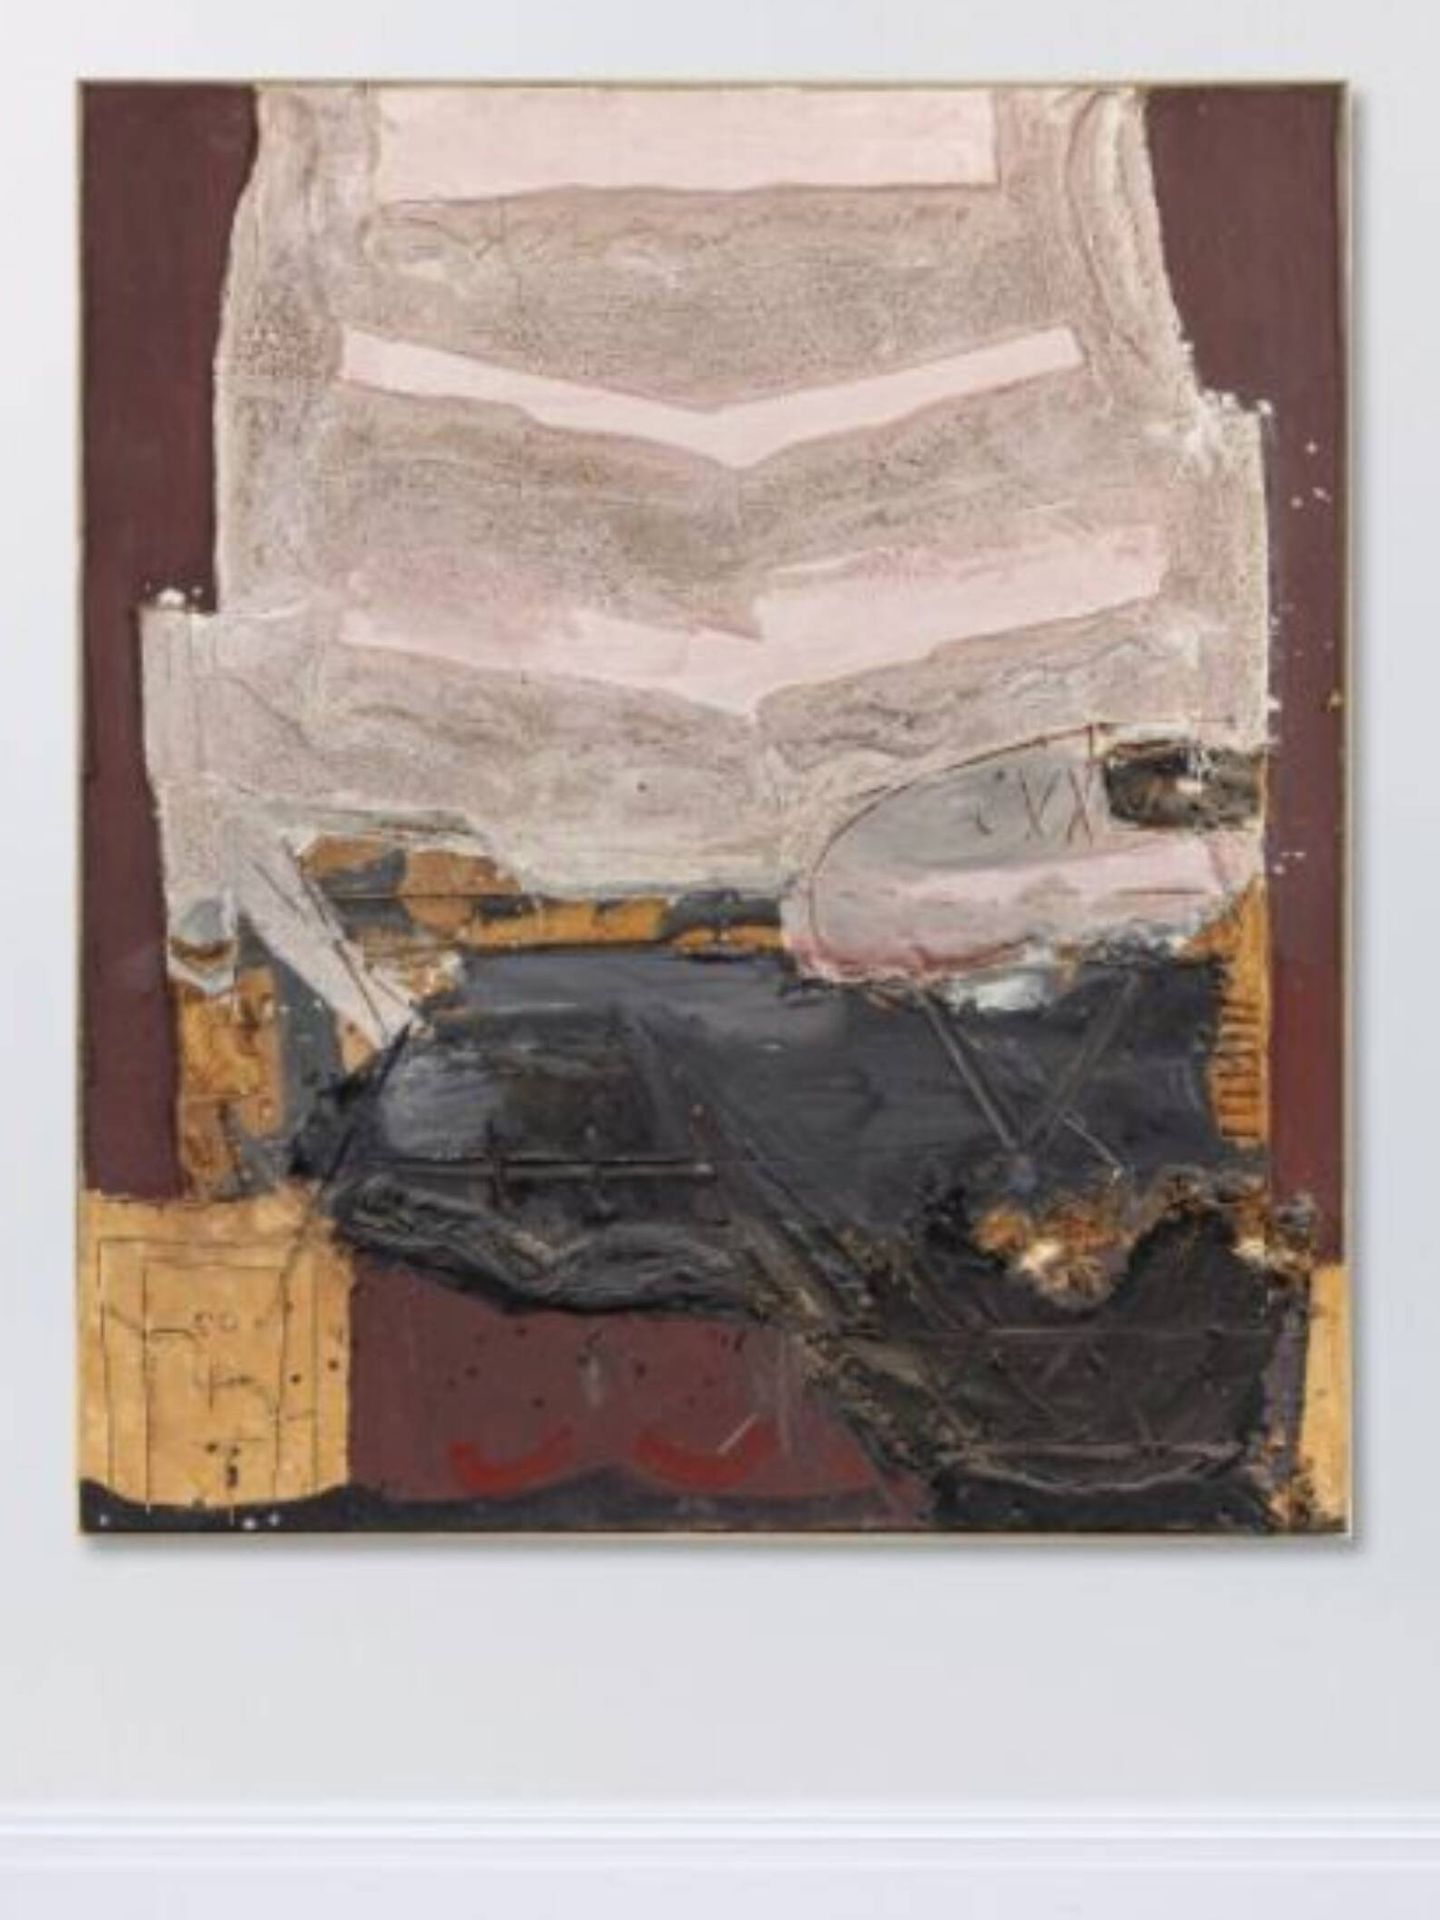 El cuadro de Antoni Tàpies subastado como parte de la colección de la familia Fierro. (Cortesía/Sotheby's)